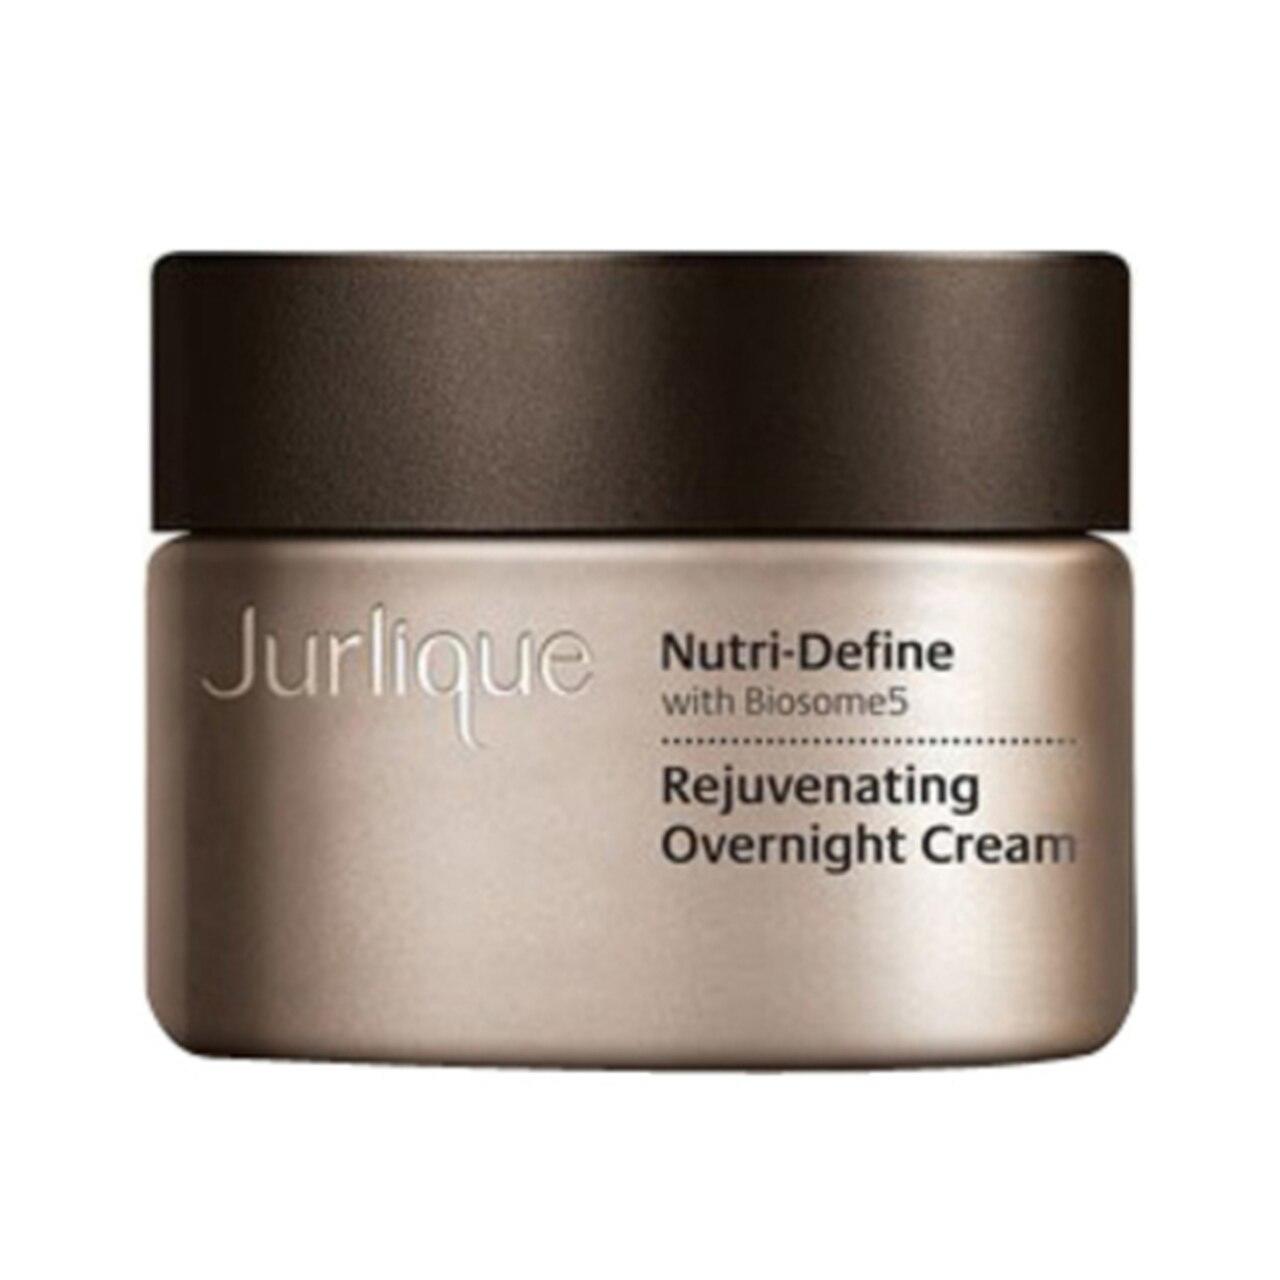 Jurlique Nutri-Define Rejuvenating Overnight Cream Mini